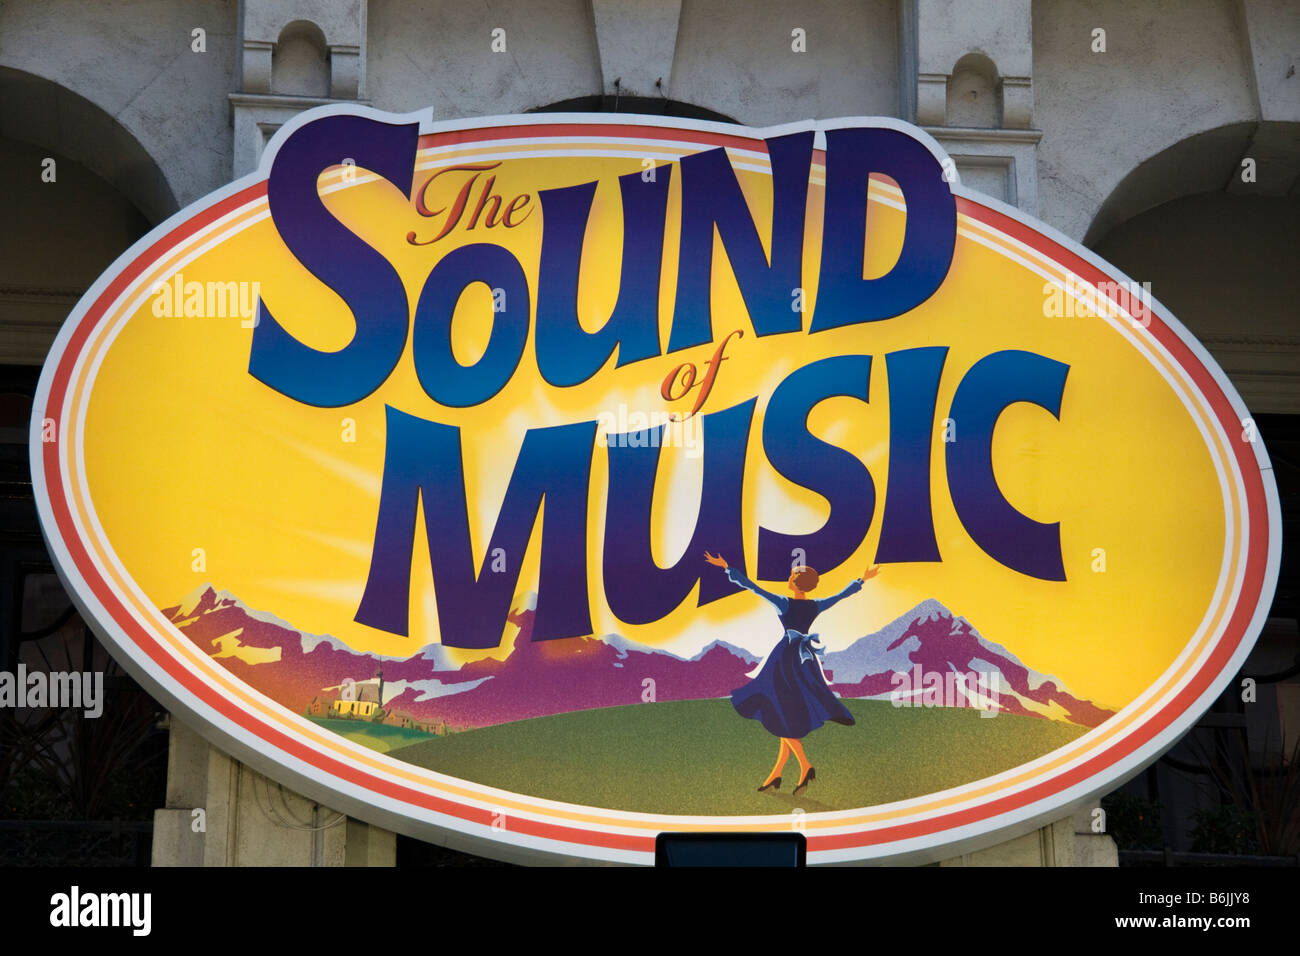 Metafoor aantrekkelijk vervorming Sign for The Sound of Music at the London Palladium UK Stock Photo ...